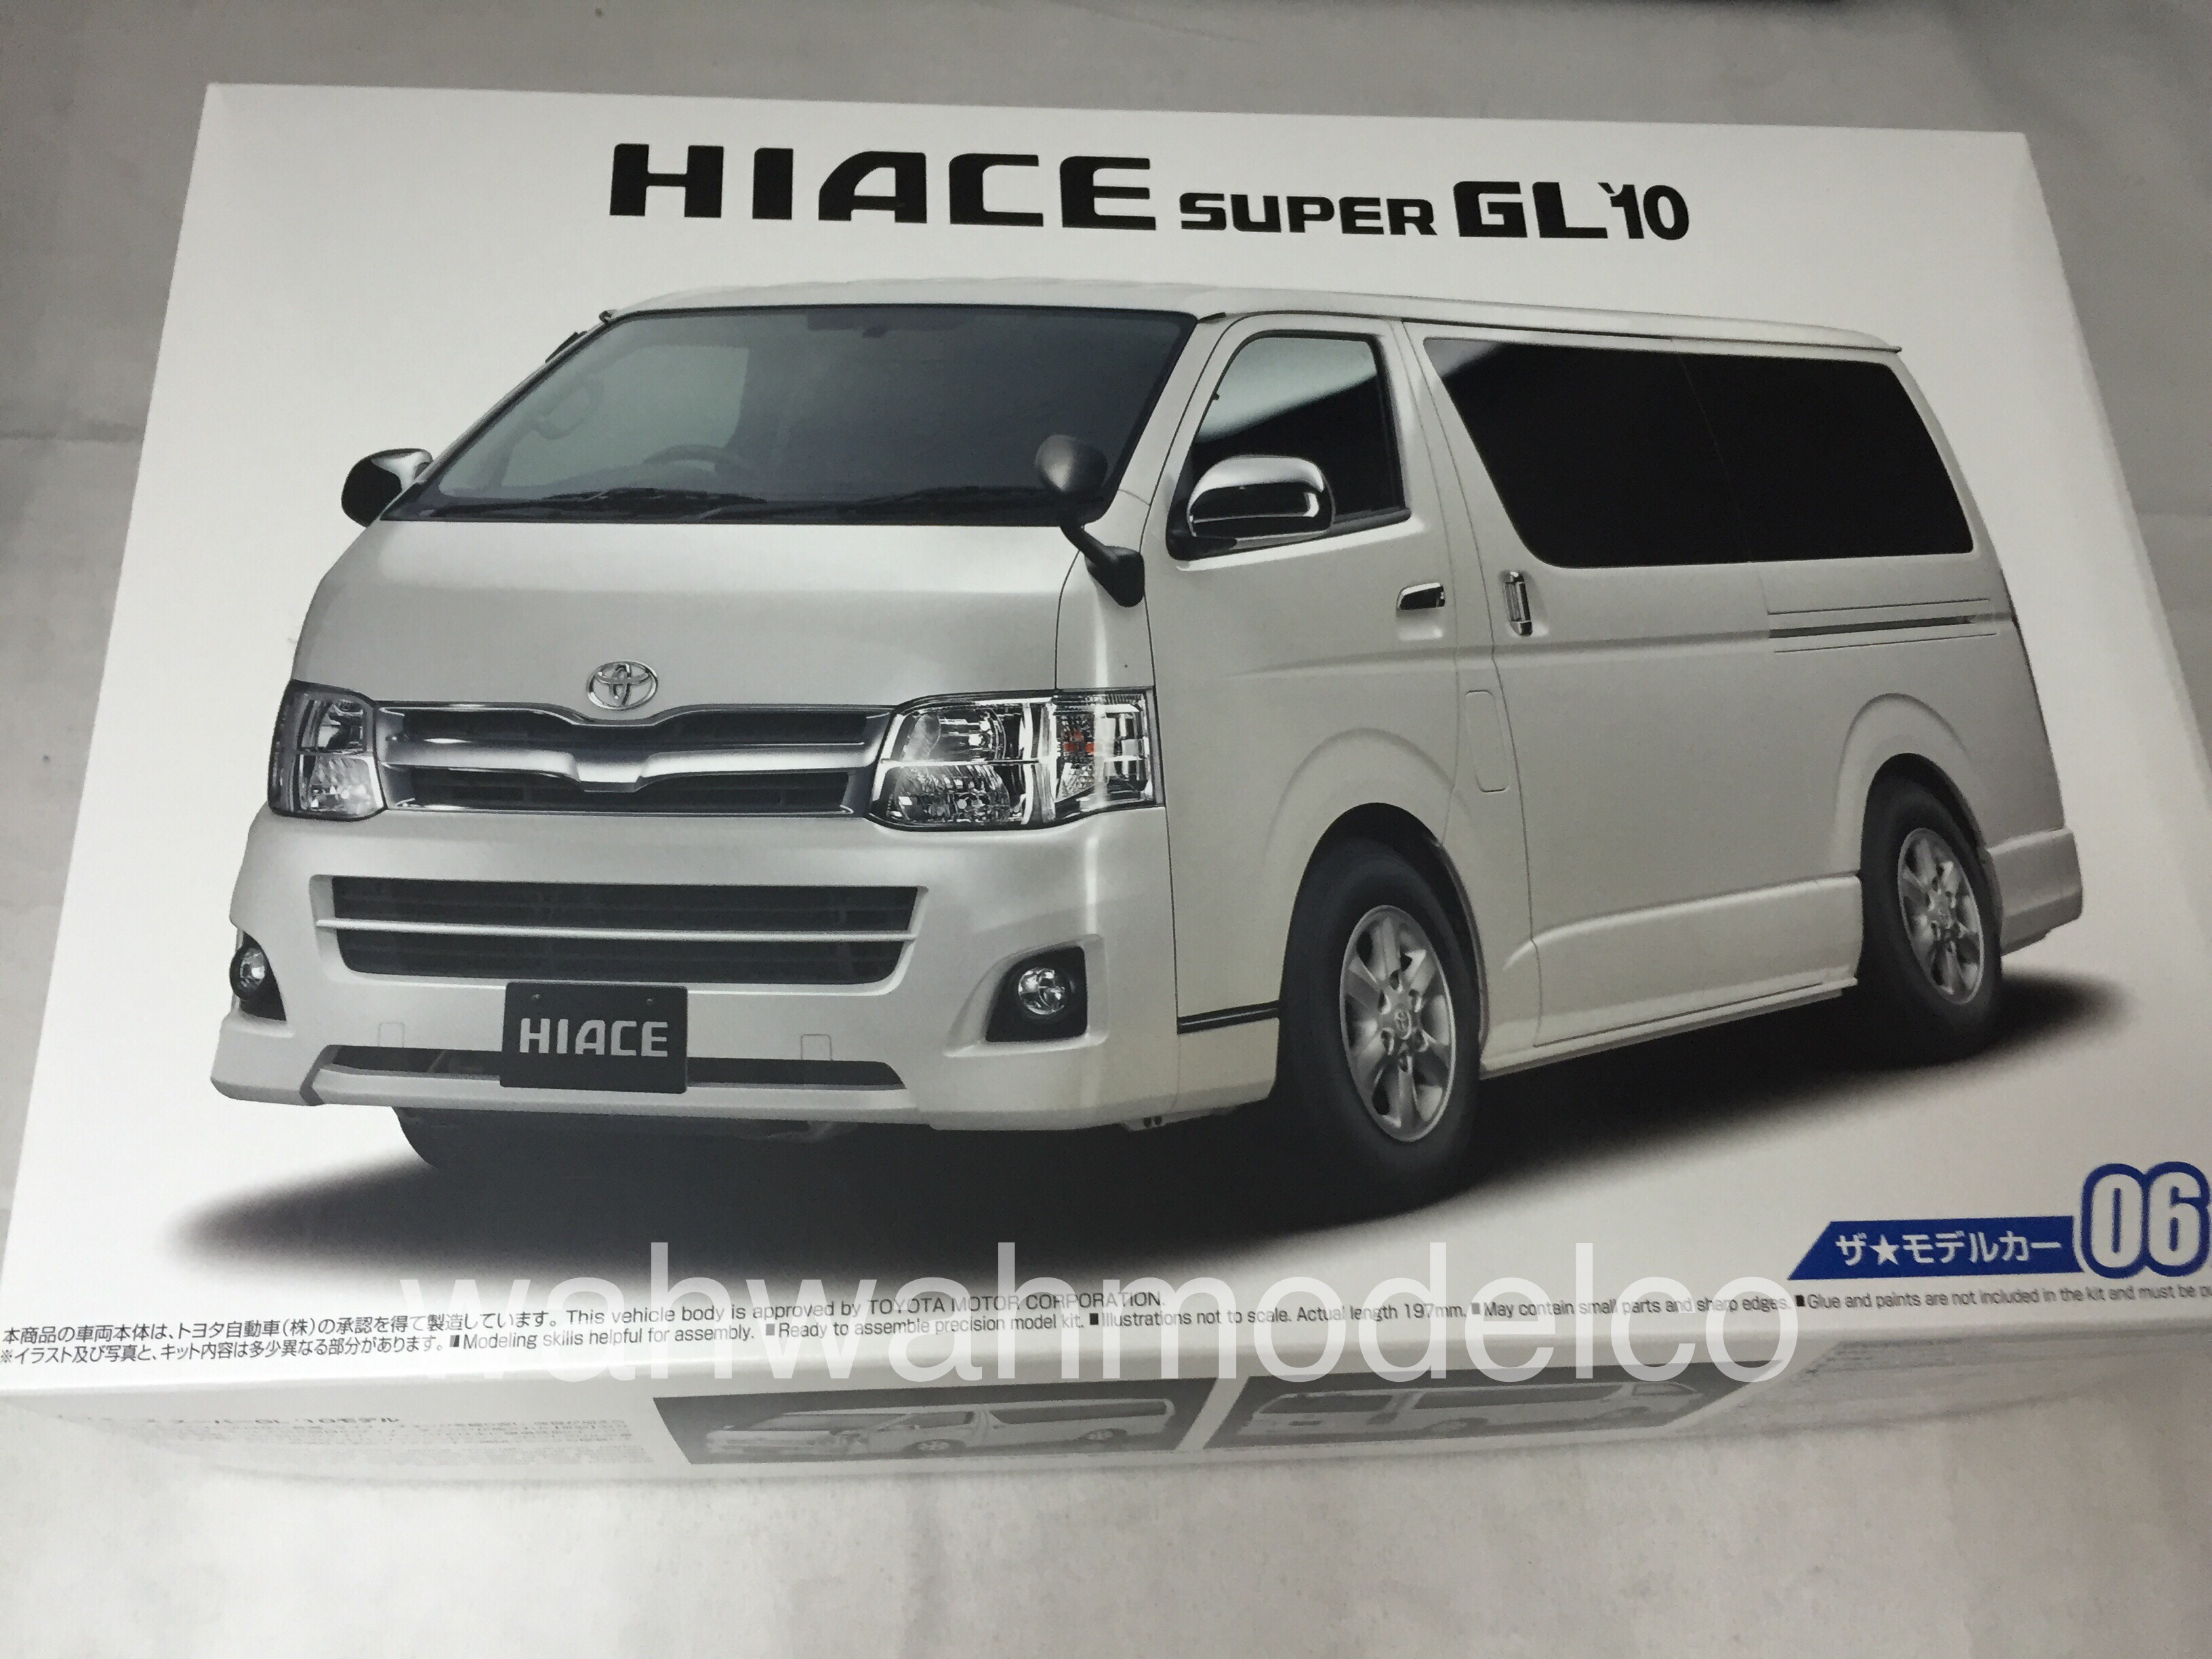 Aoshima 1:24 scale plastic model car kit Toyota HiAce Super GL Light Vehicle Van 